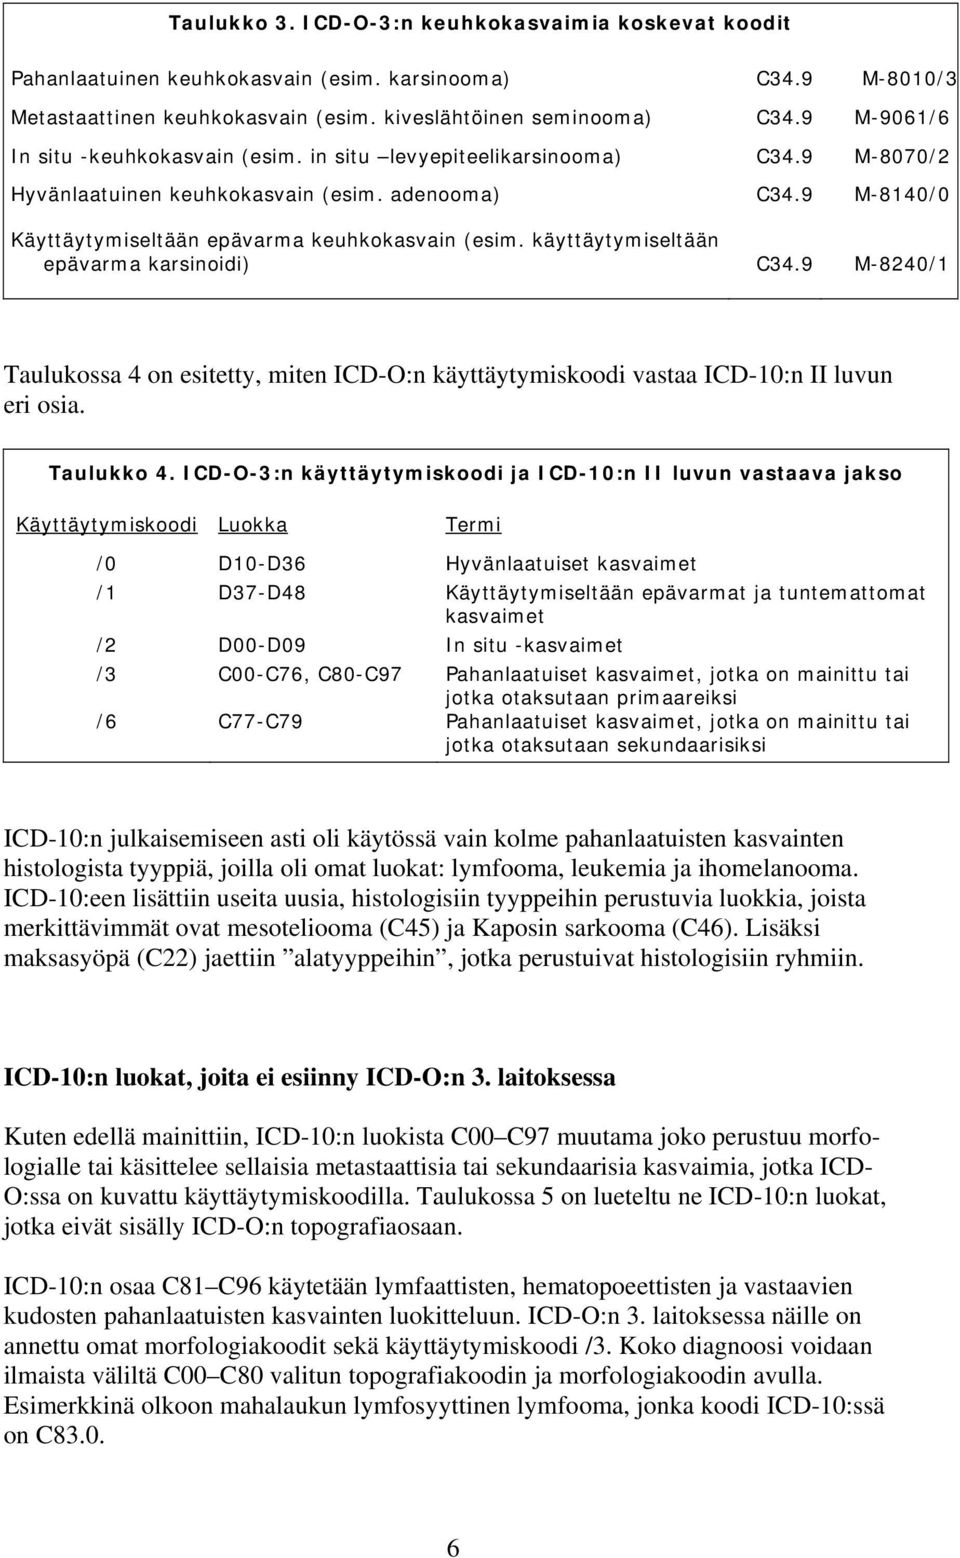 käyttäytymiseltään epävarma karsinoidi) C34.9 M-8240/1 Taulukossa 4 on esitetty, miten ICD-O:n käyttäytymiskoodi vastaa ICD-10:n II luvun eri osia. Taulukko 4.